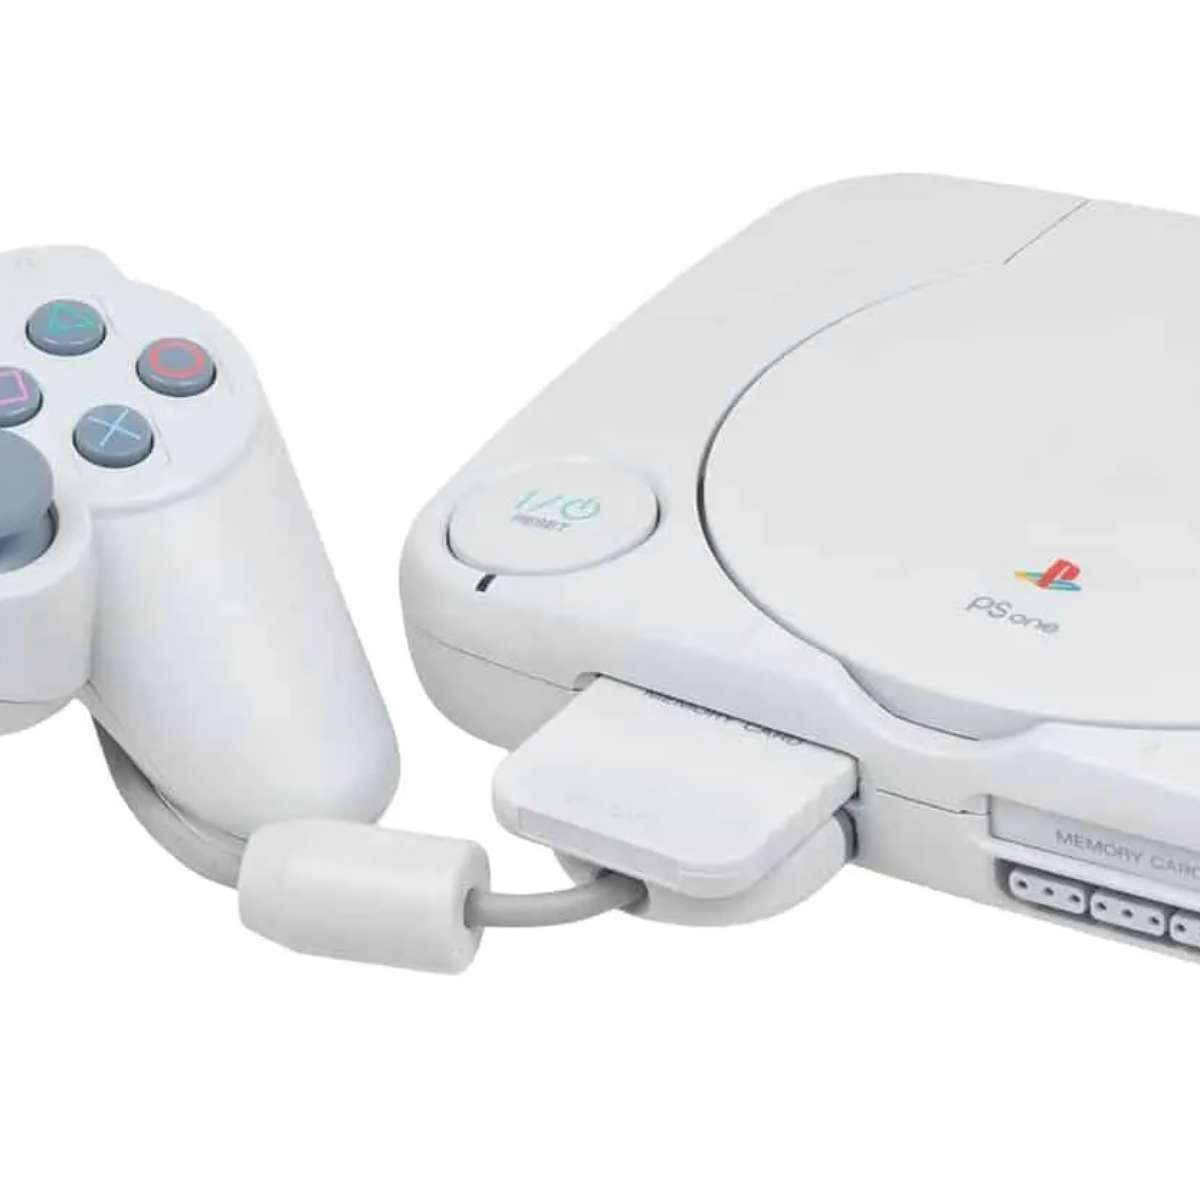 Preços baixos em Futebol Sony PlayStation 1 2004 lançado Video Games